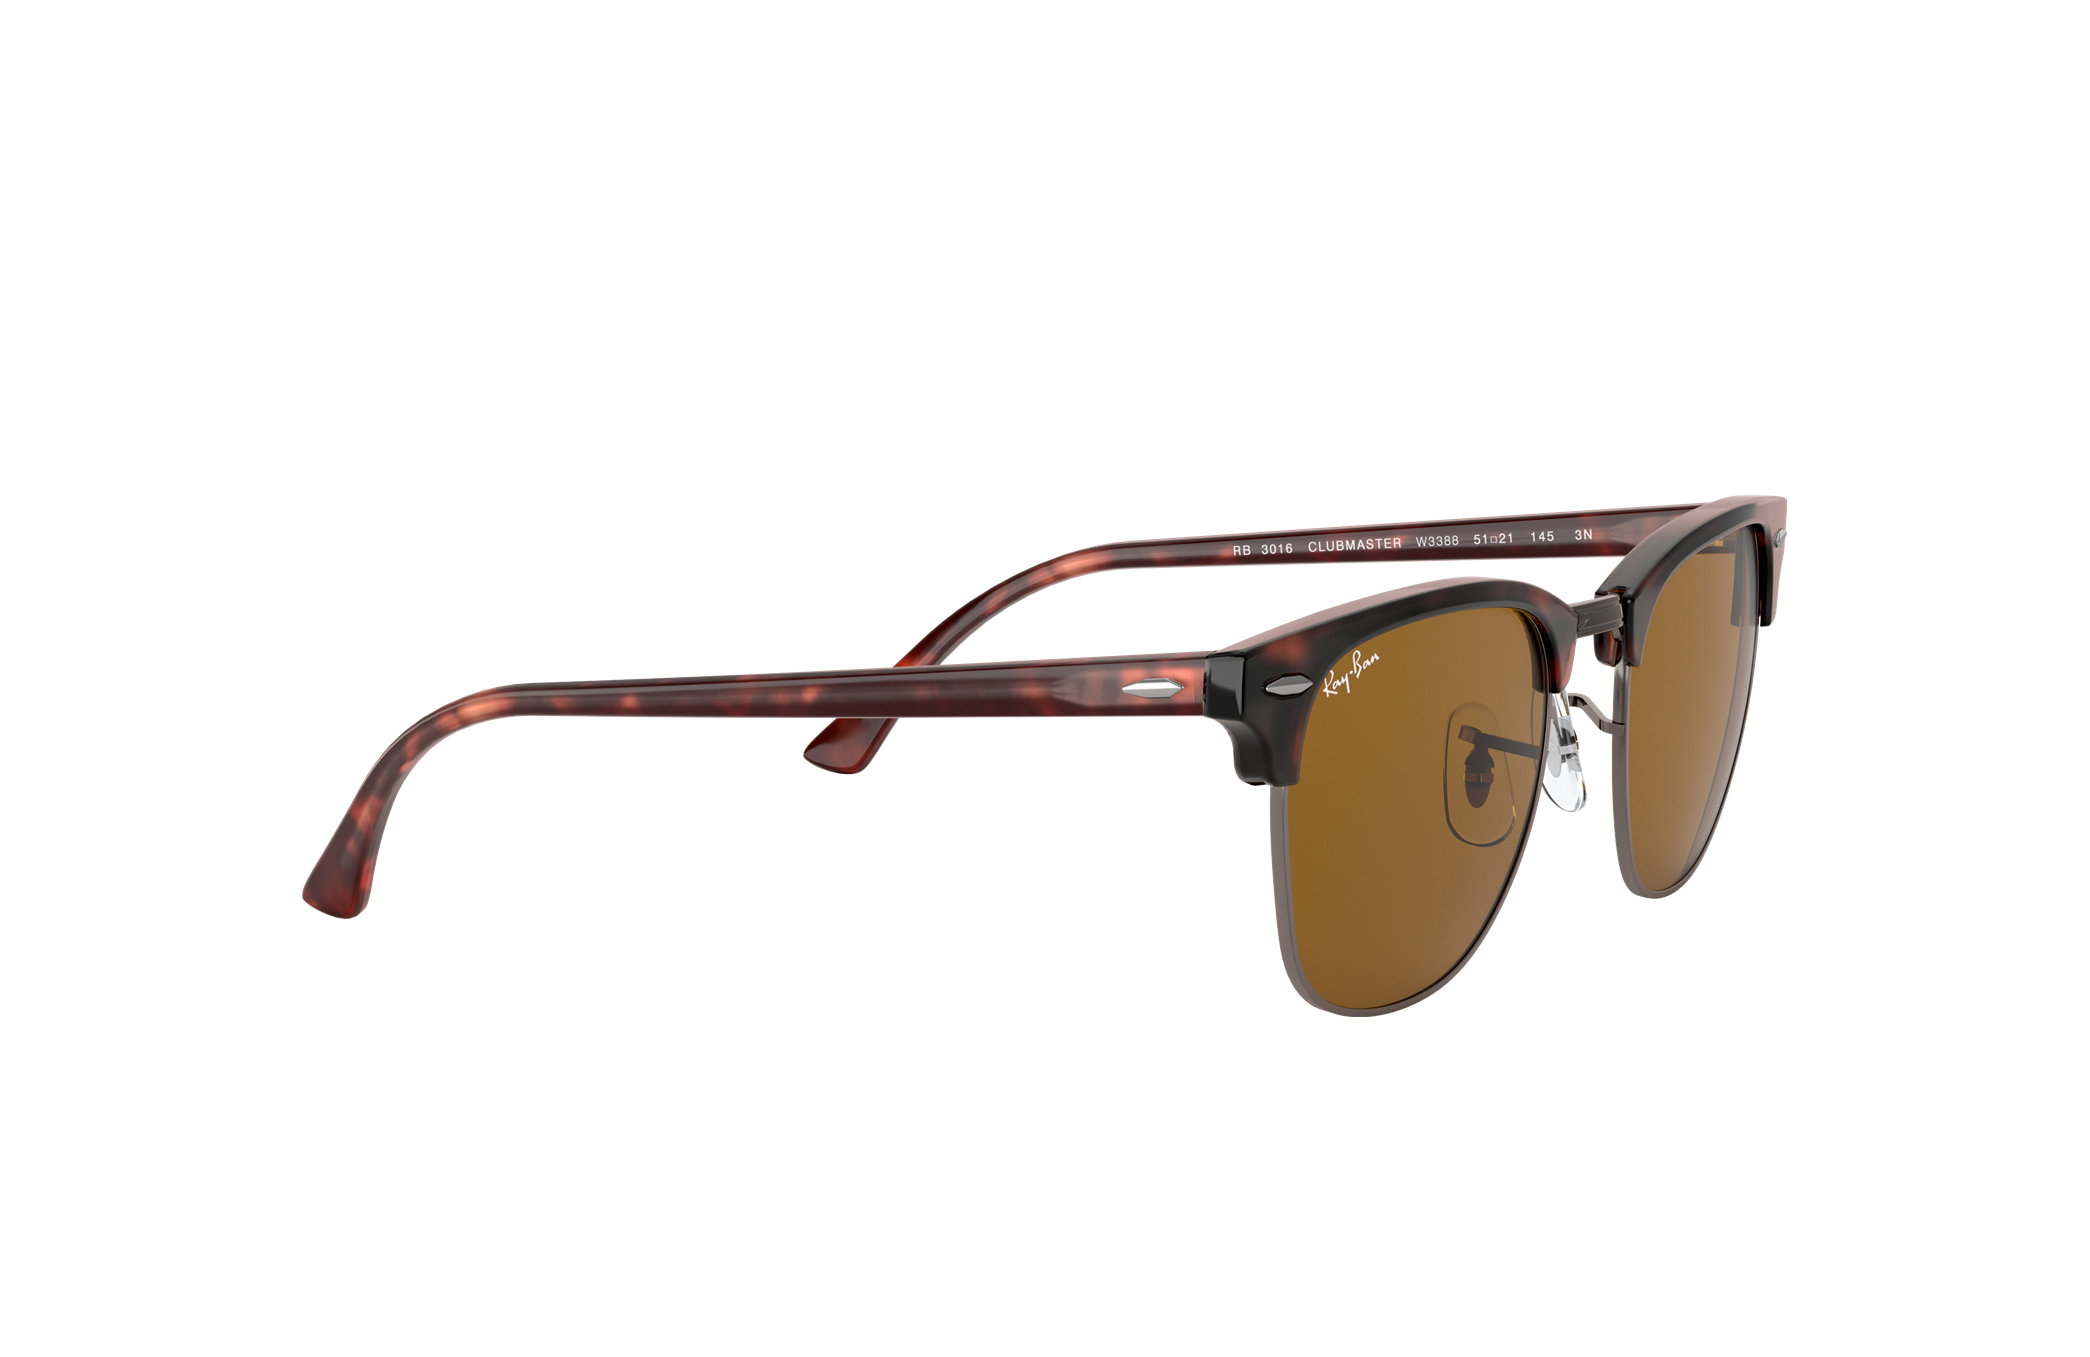 Accesorios Gafas y gafas de sol Gafas de sol Ray-Ban Sunglasses Club master RB3016 990 Marco de tortuga unisex y lente verde polarizada G15 